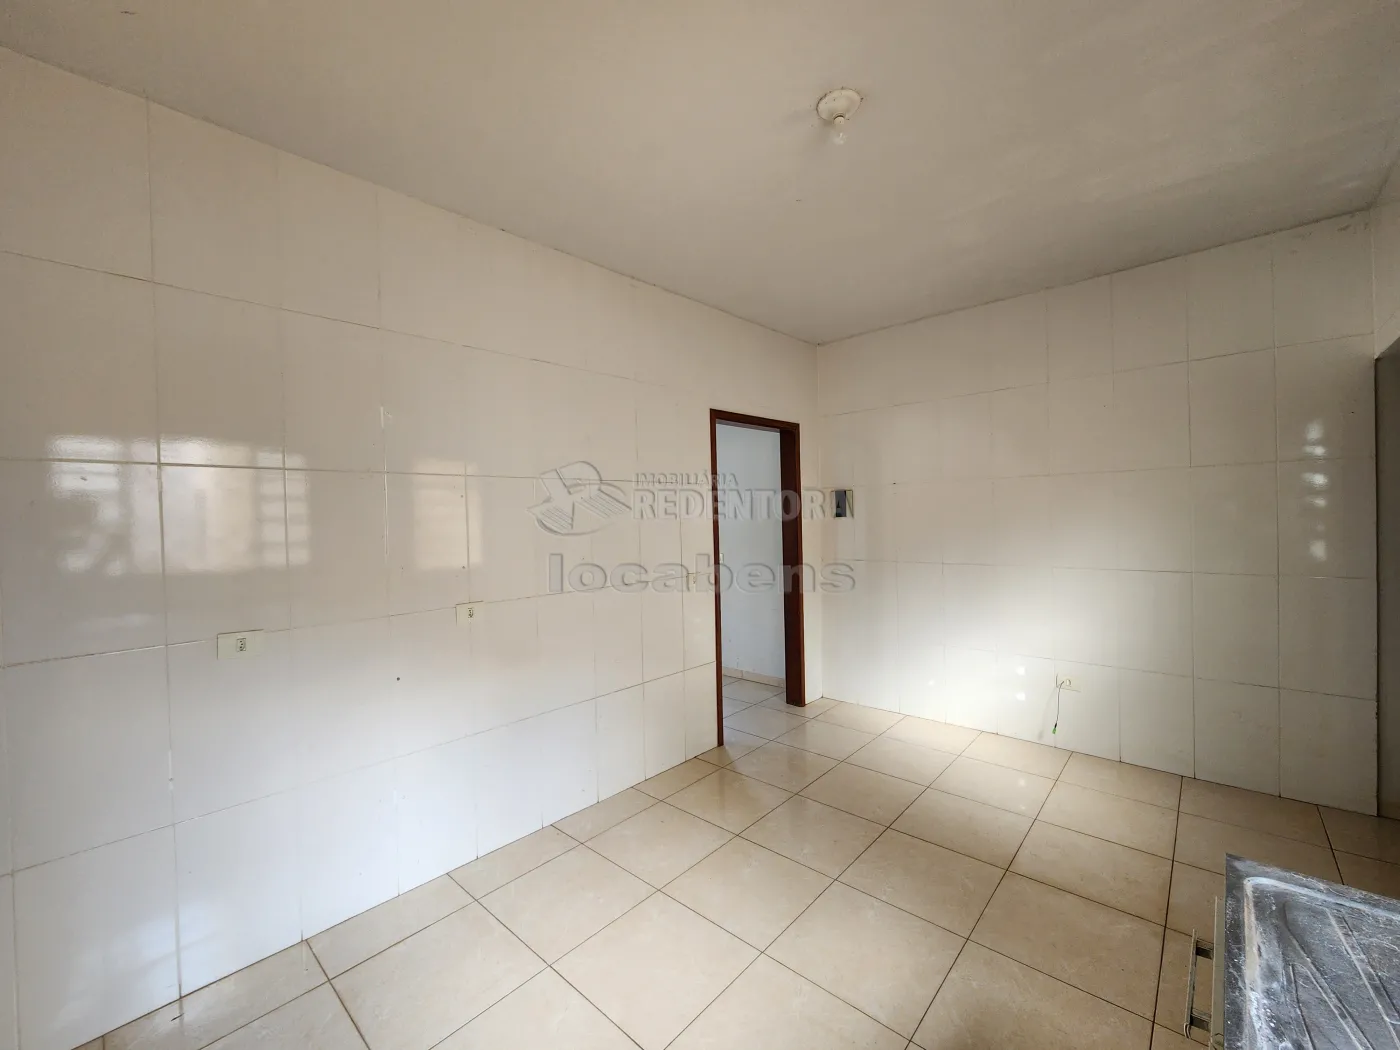 Alugar Casa / Padrão em Guapiaçu apenas R$ 1.150,00 - Foto 5